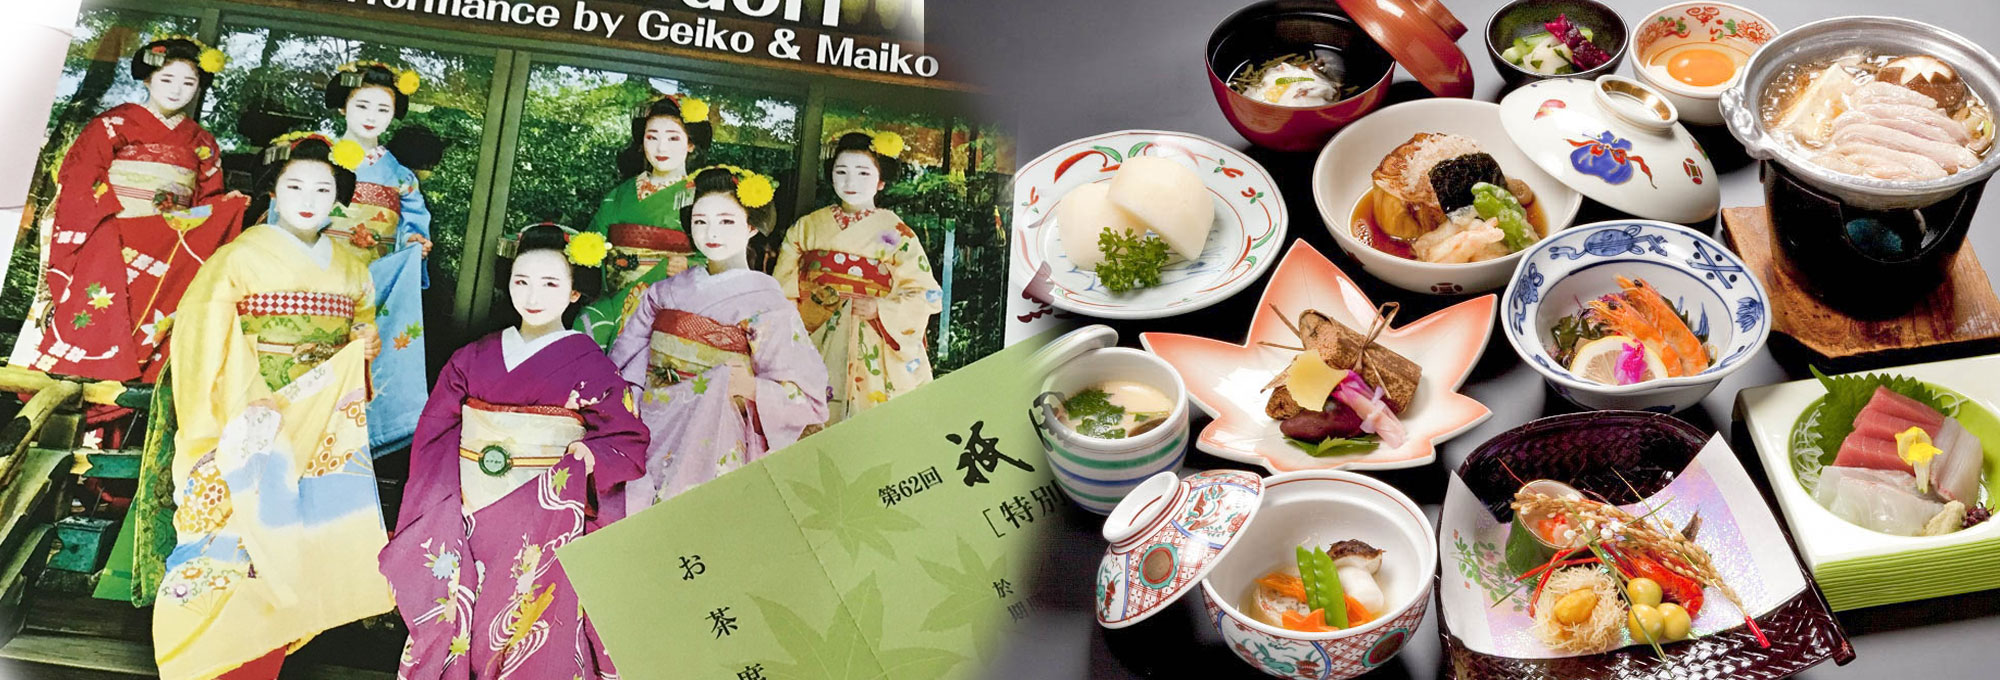 伝承のをどりと京の美味、祇園をどり観覧券付きプラン